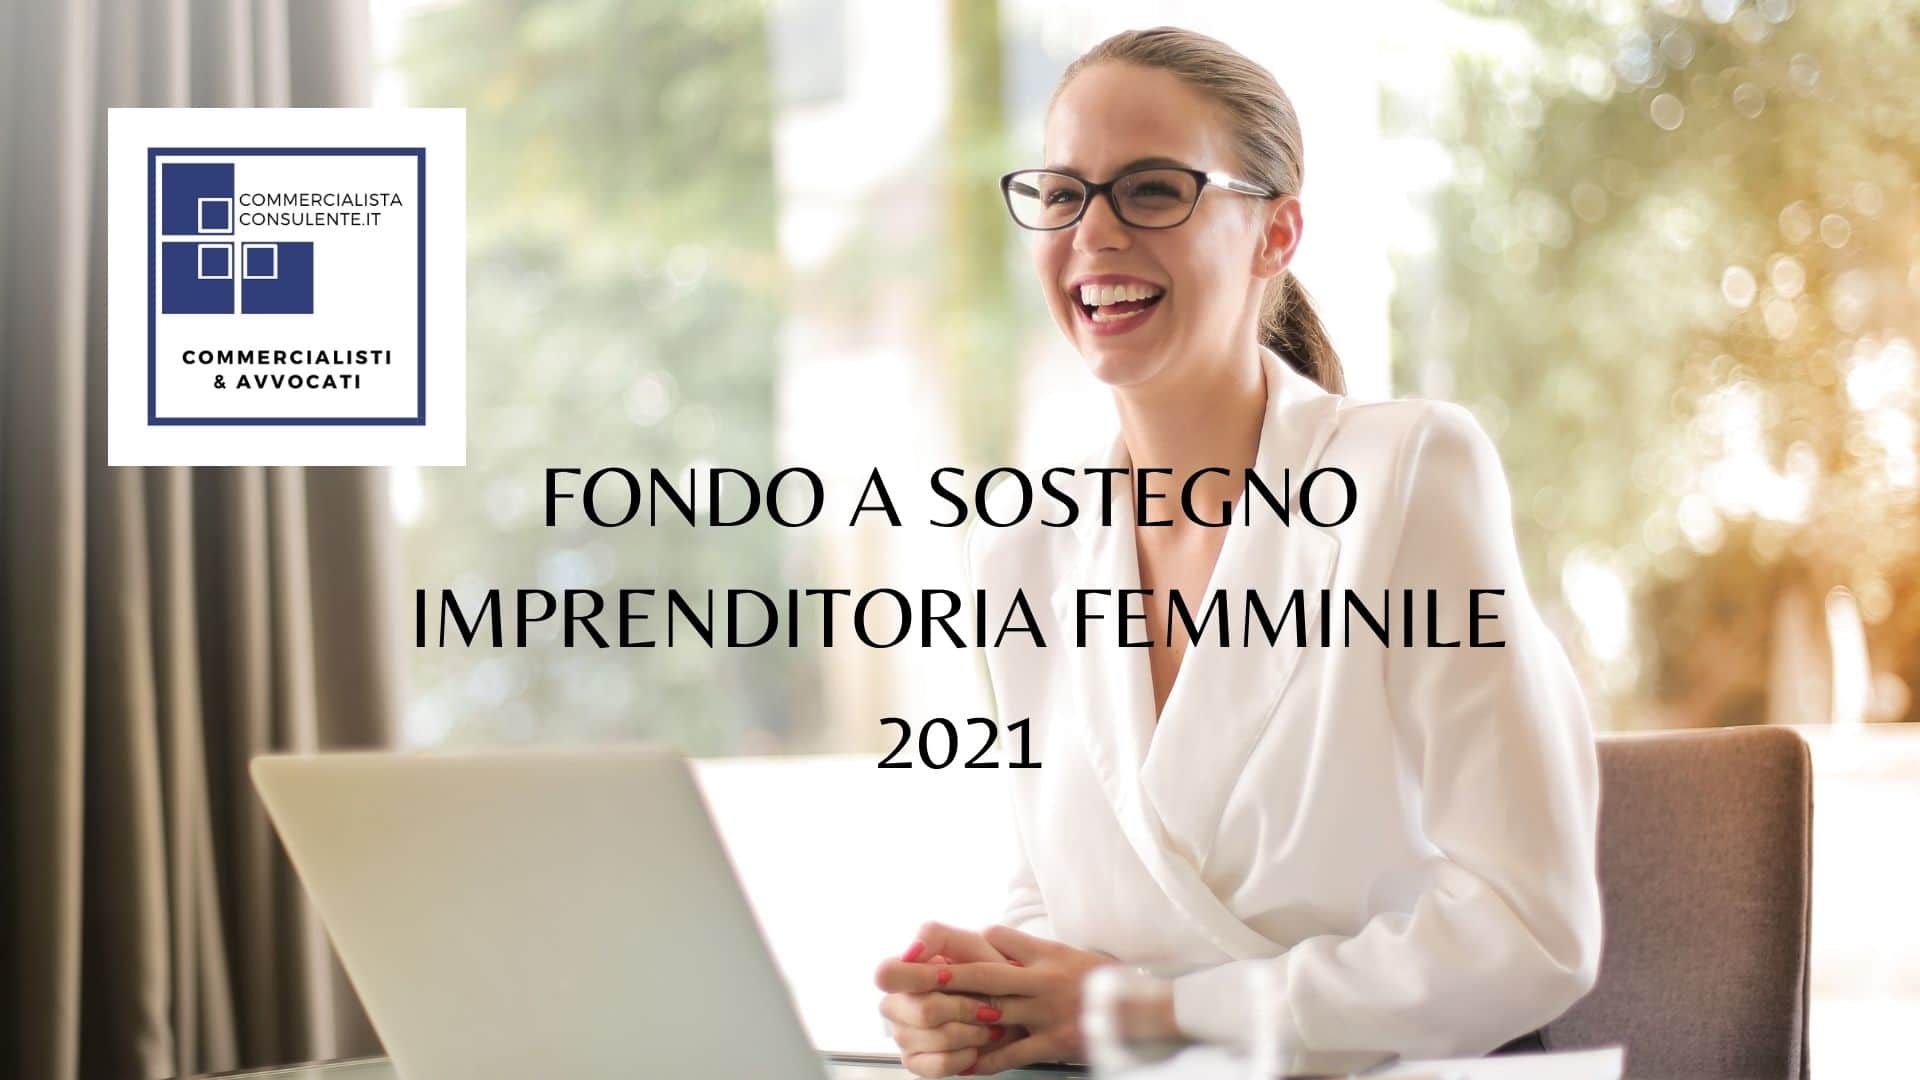 FONDO A SOSTEGNO IMPRENDITORIA FEMMINILE 2021